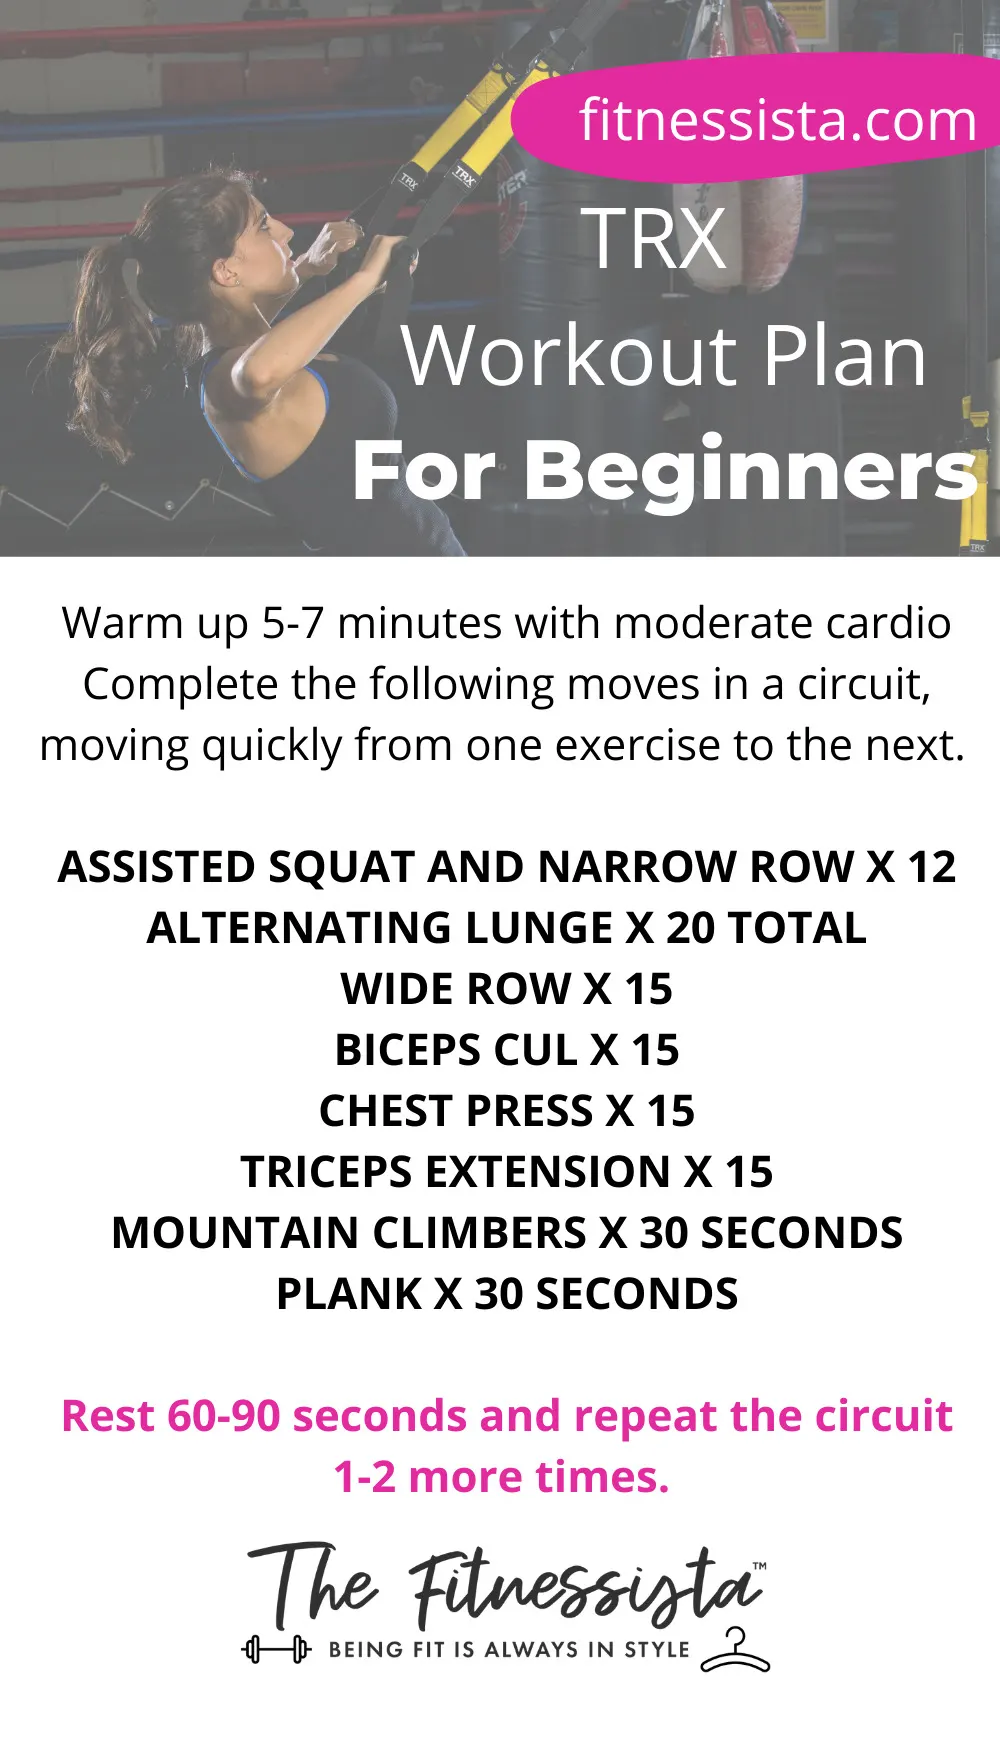 trx workout plan for beginners.jpg